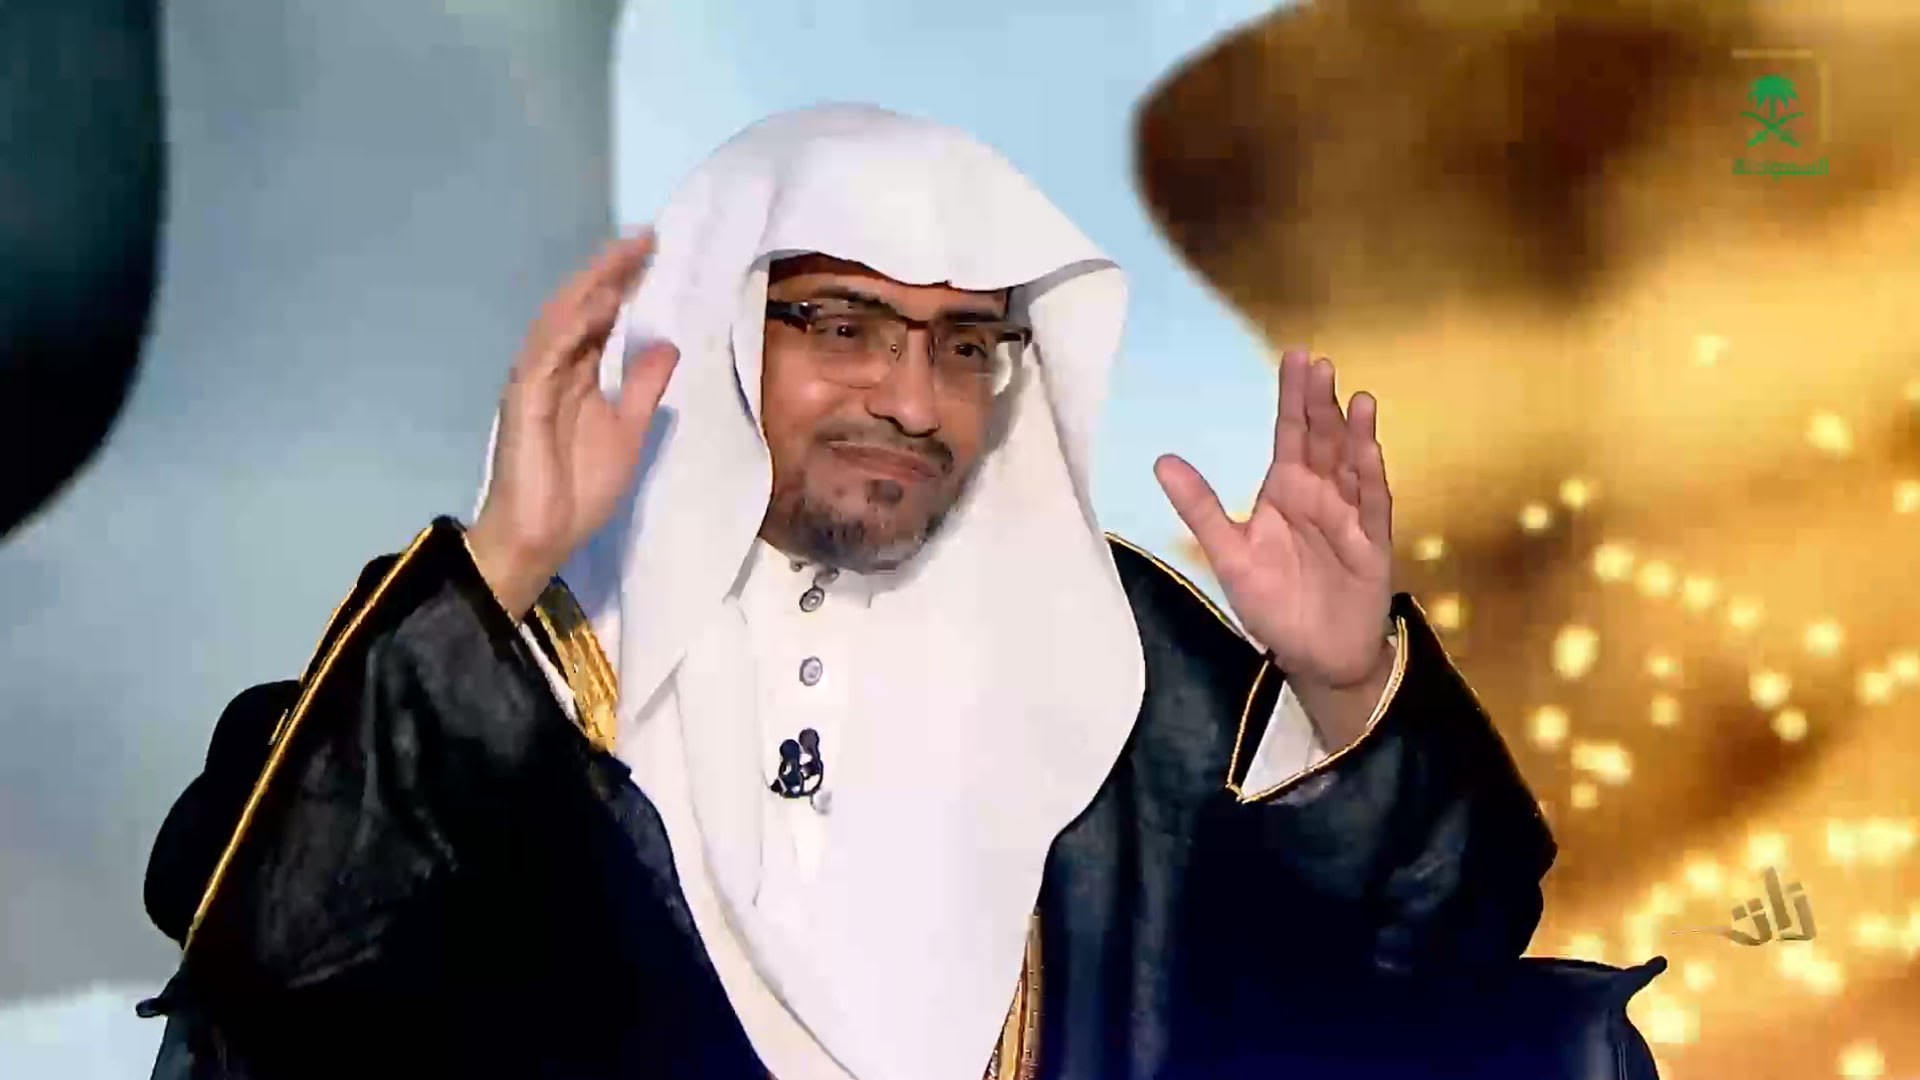 الداعية السعودي صالح المغامسي: أسعى وارجو أن ينشأ الله على يدي مذهبا إسلاميا جديدا